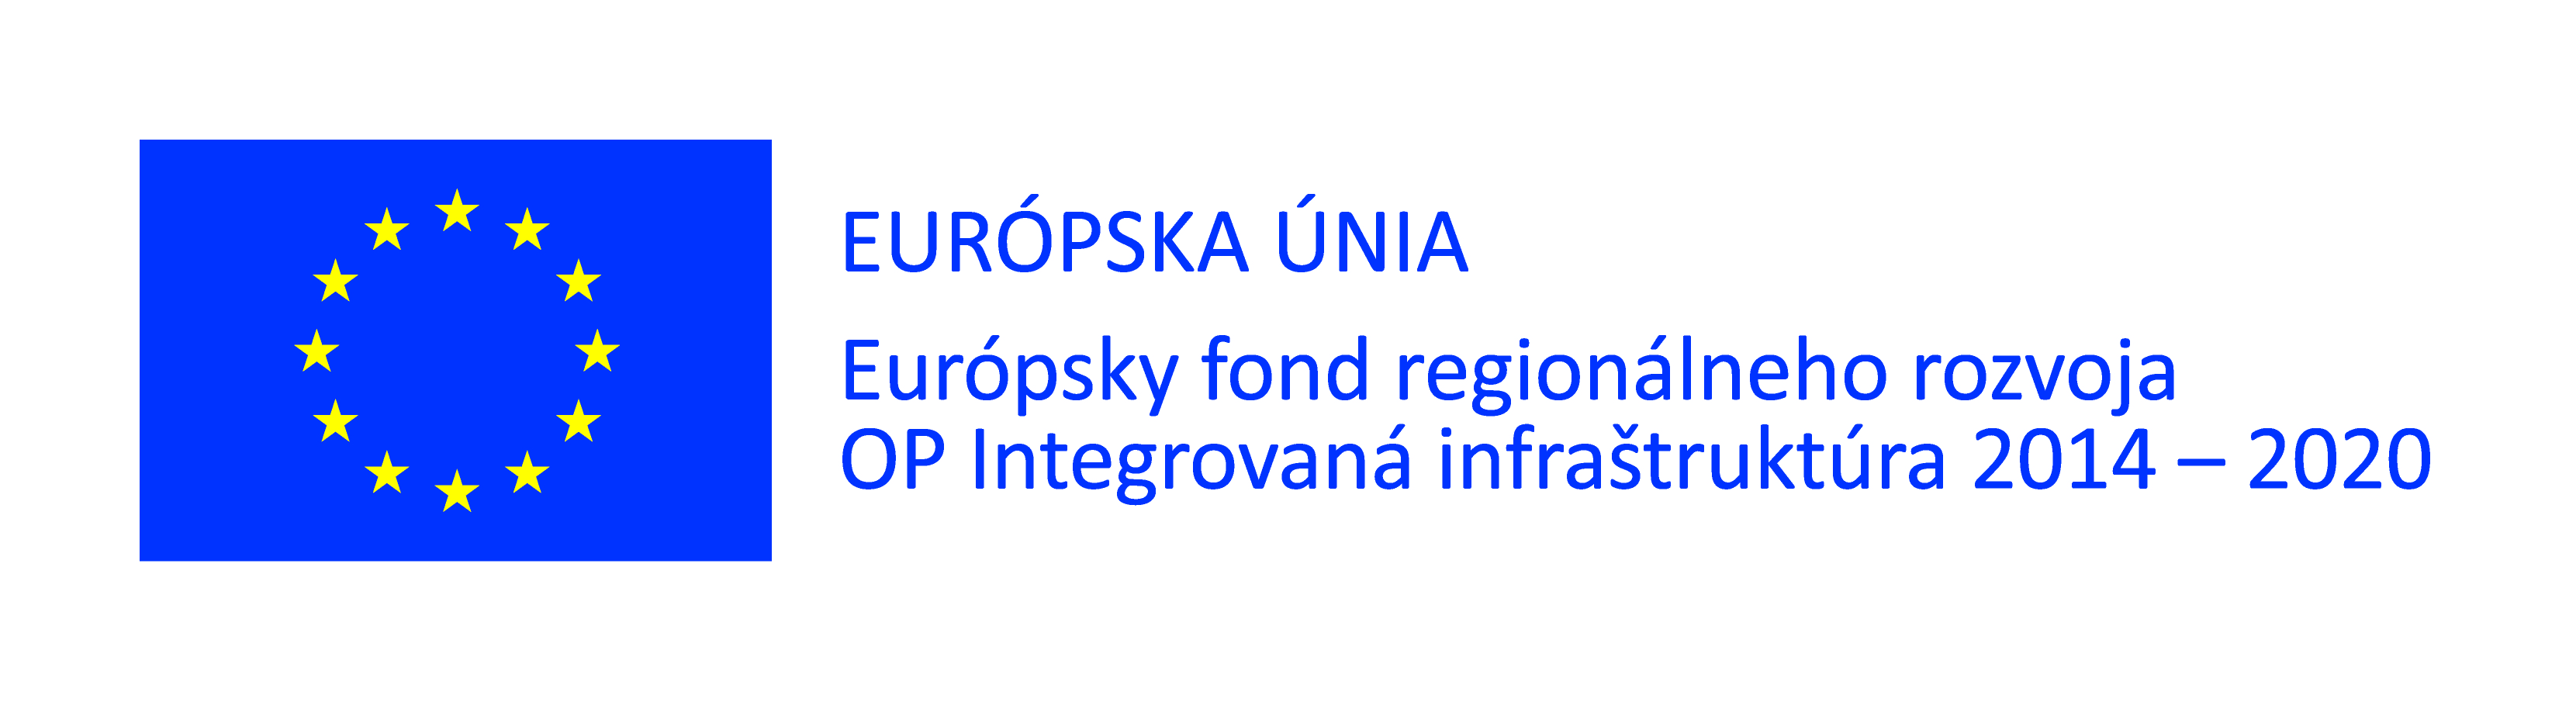 Európsky fond regionálneho rozvoja OP integrovaná infraštruktúra.